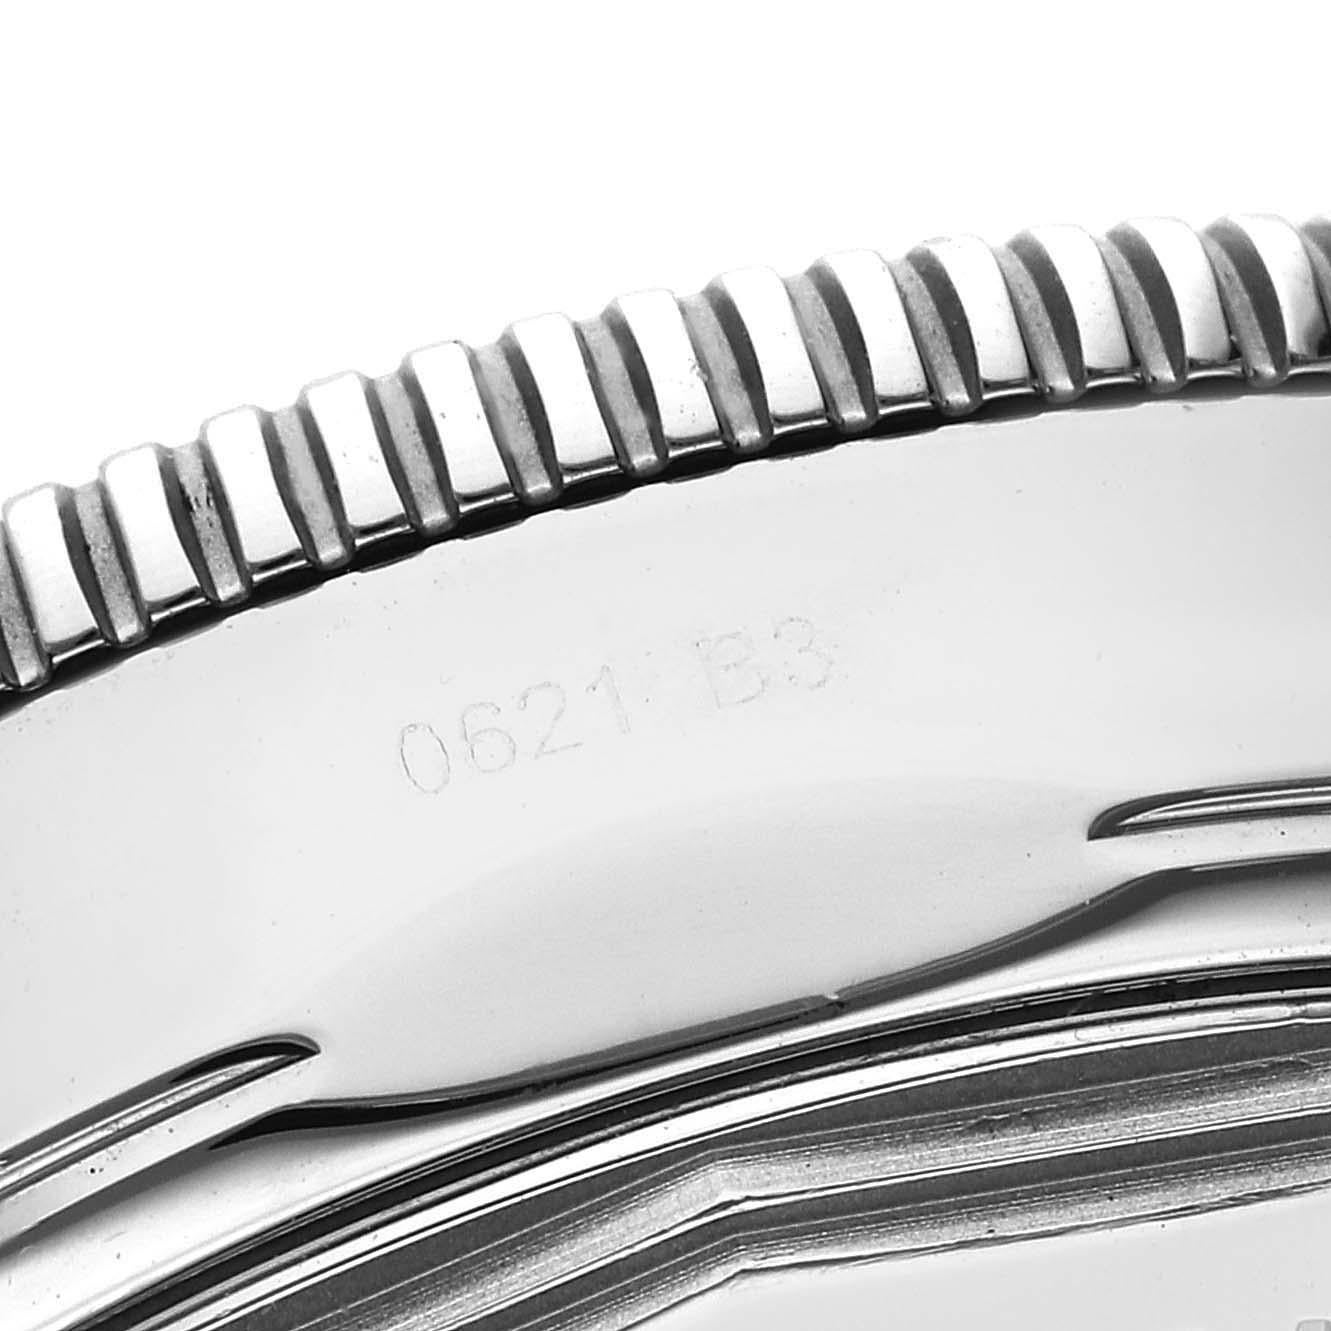 Breitling Superocean Heritage II 42 Schwarzes Zifferblatt Stahl Herrenuhr AB2010. Automatisches Uhrwerk mit Automatikaufzug B20. Gehäuse aus Edelstahl mit einem Durchmesser von 42.0 mm. Verschraubte Krone aus Edelstahl. Einseitig drehbare Lünette